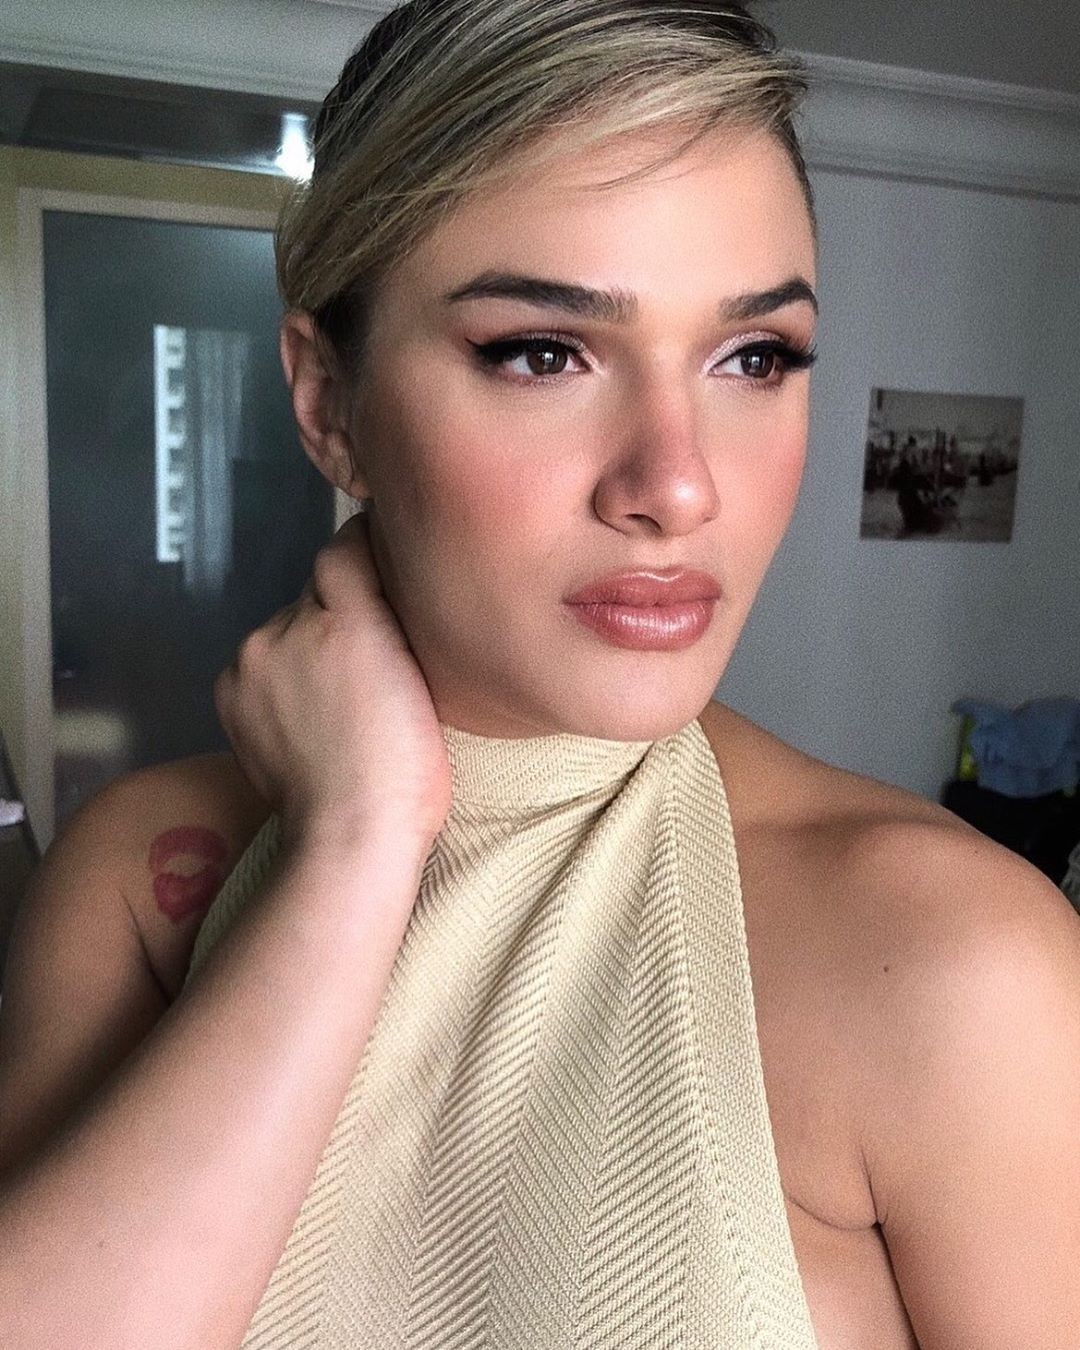 Glamour Garcia (Foto: Reprodução / Instagram)